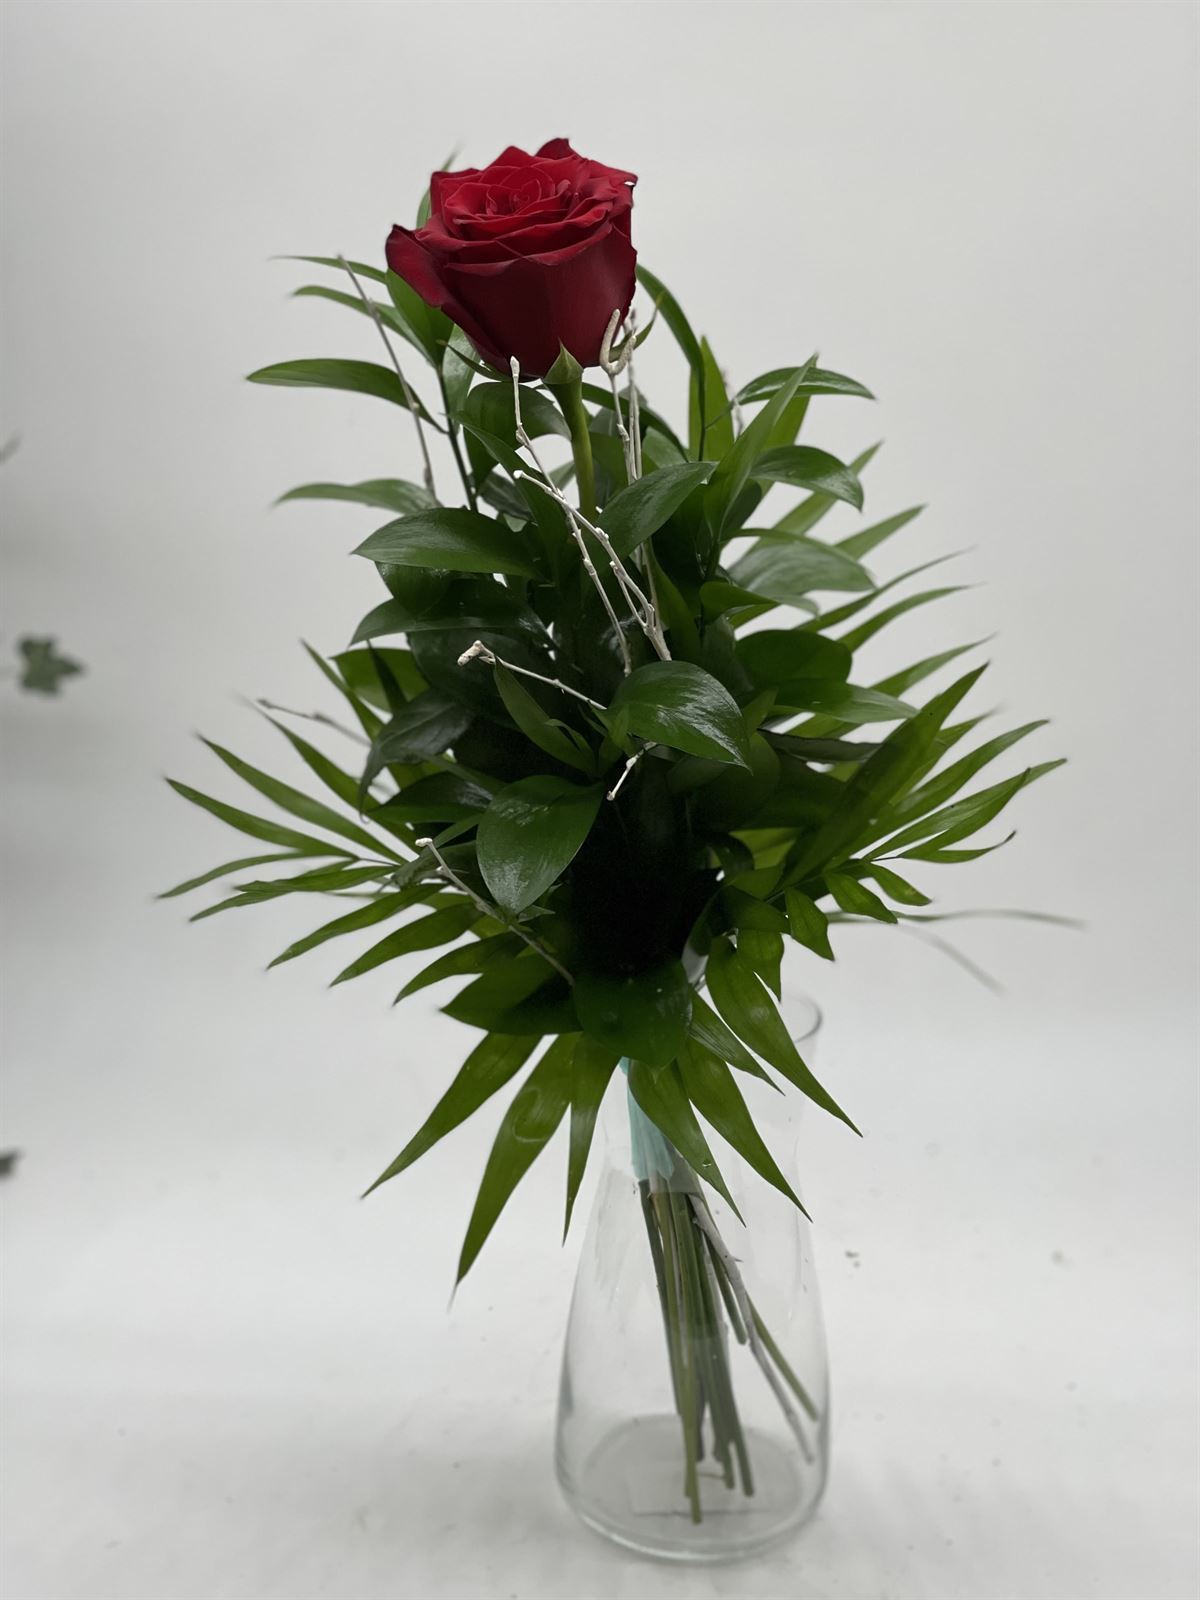 BESO. (Rosa Roja San Valentin) - Imagen 1